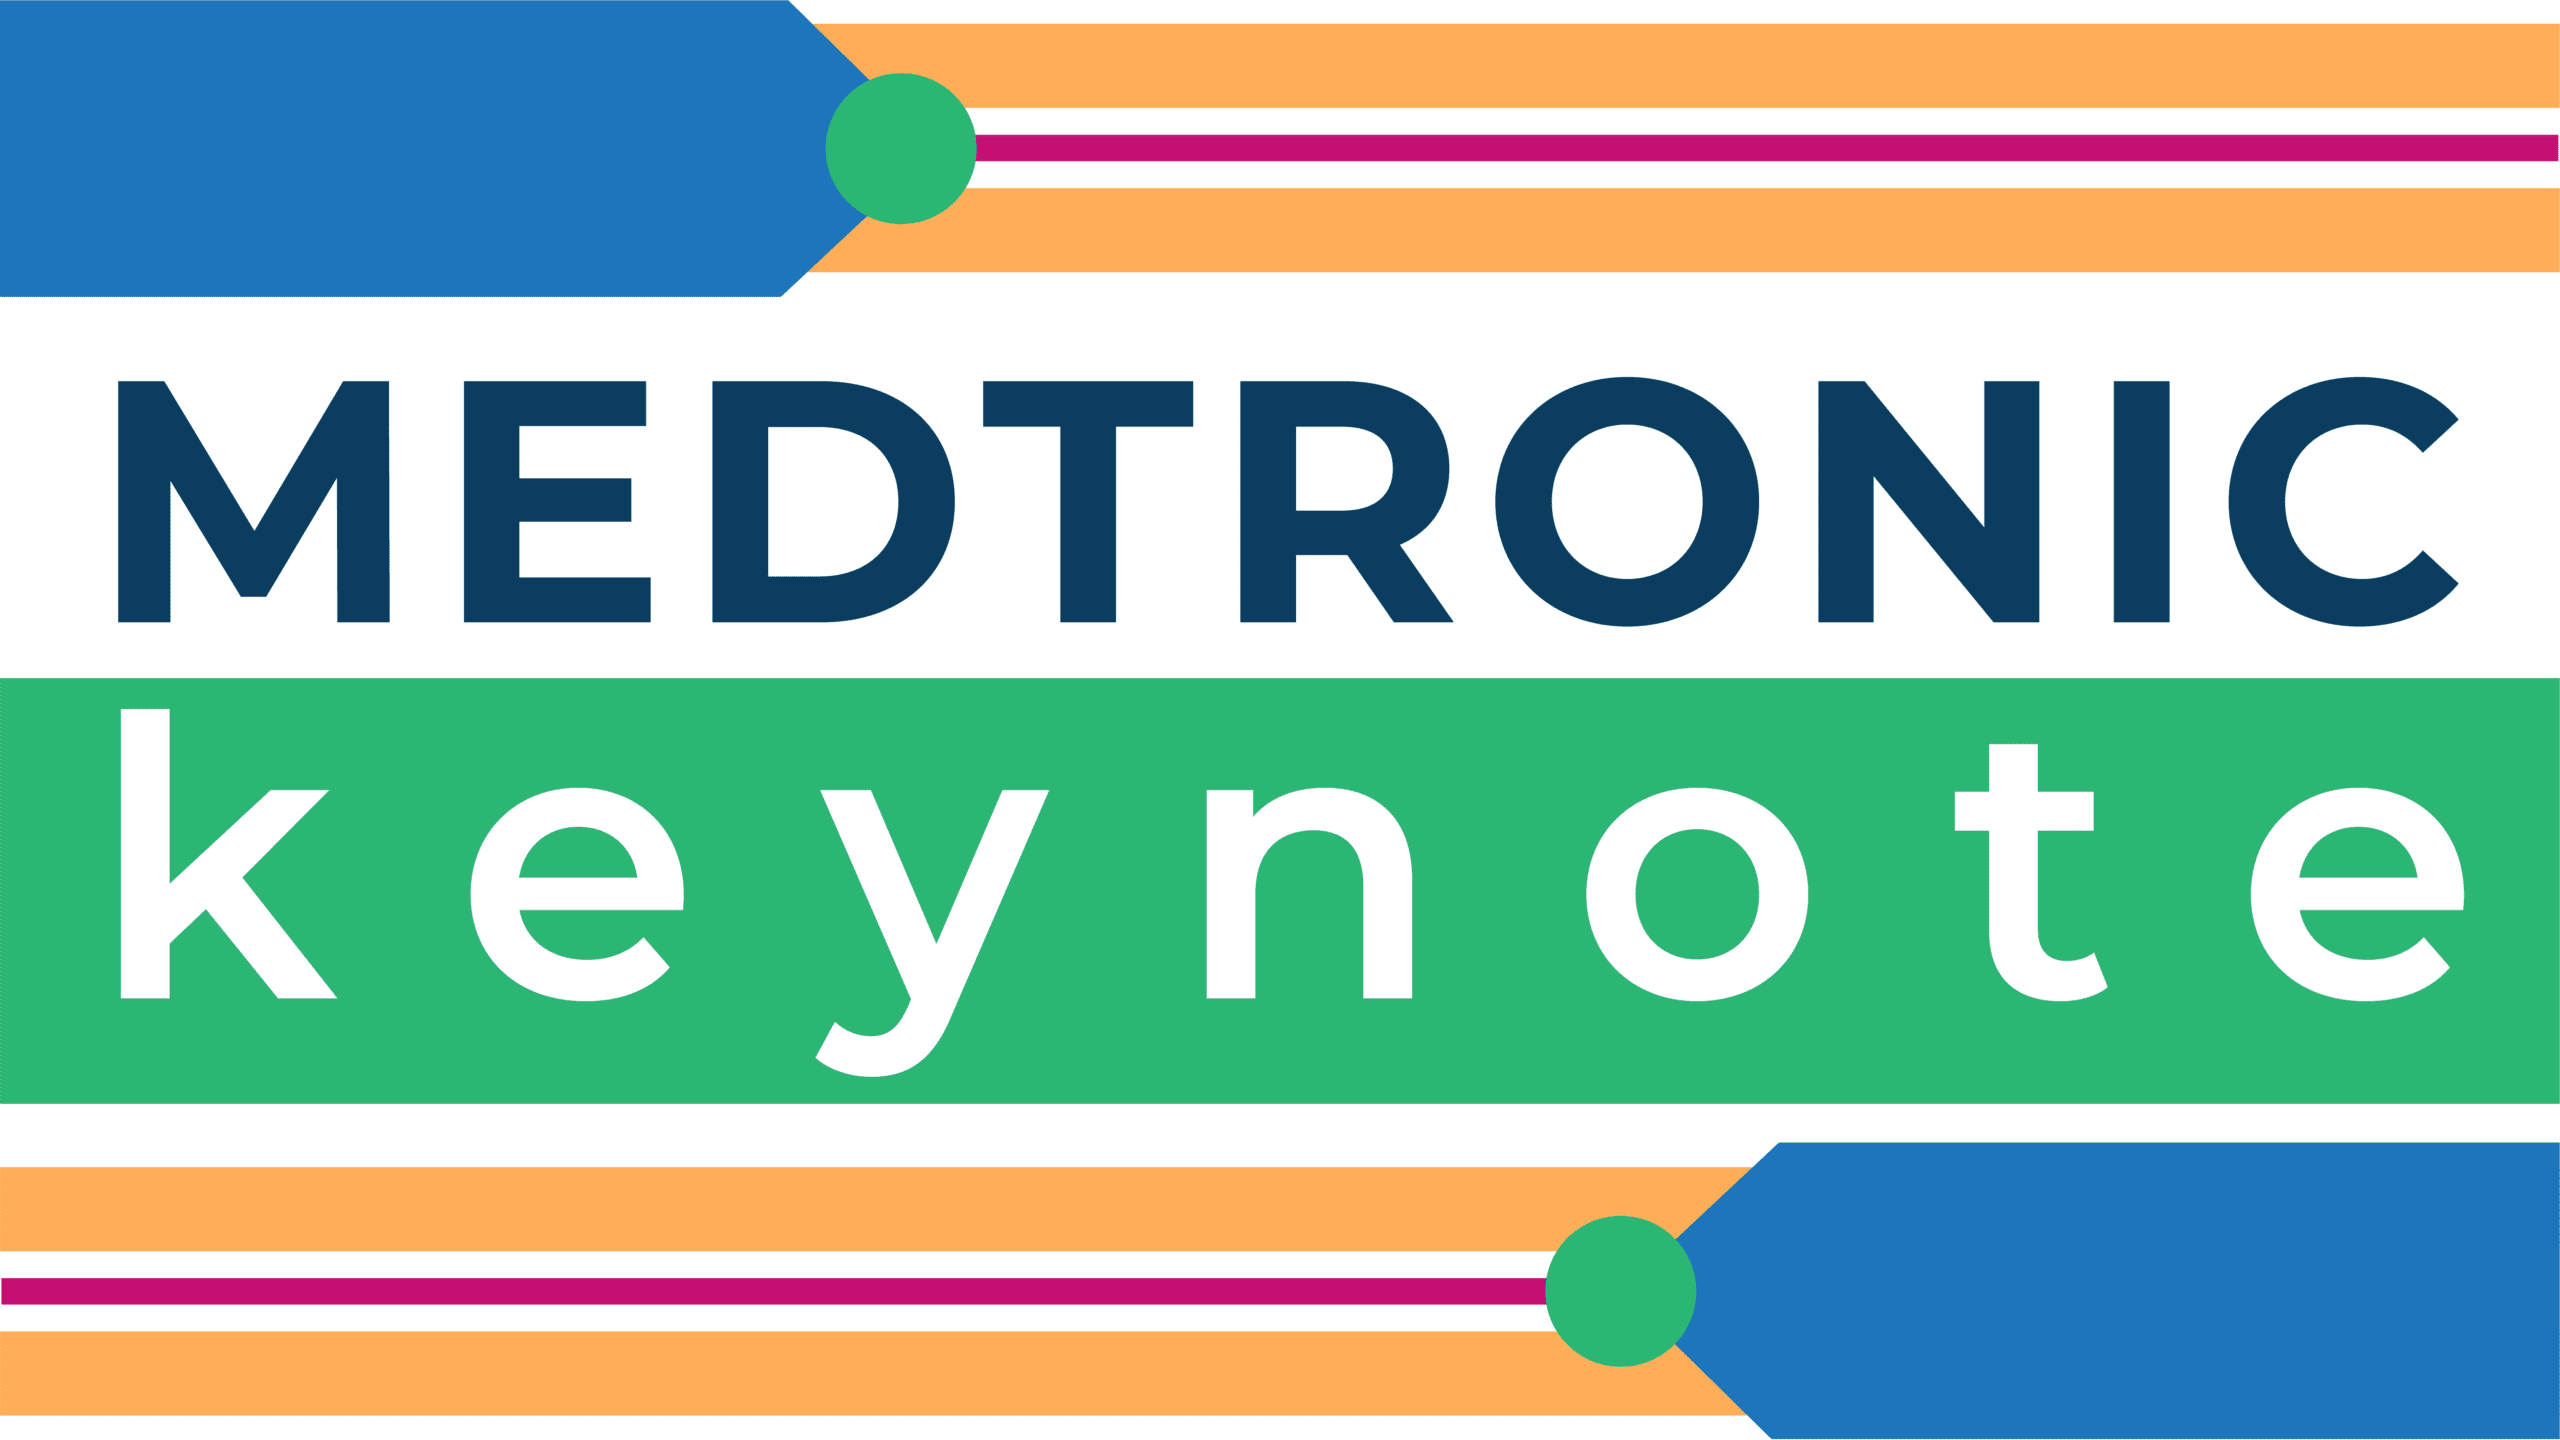 Medtronic keynote